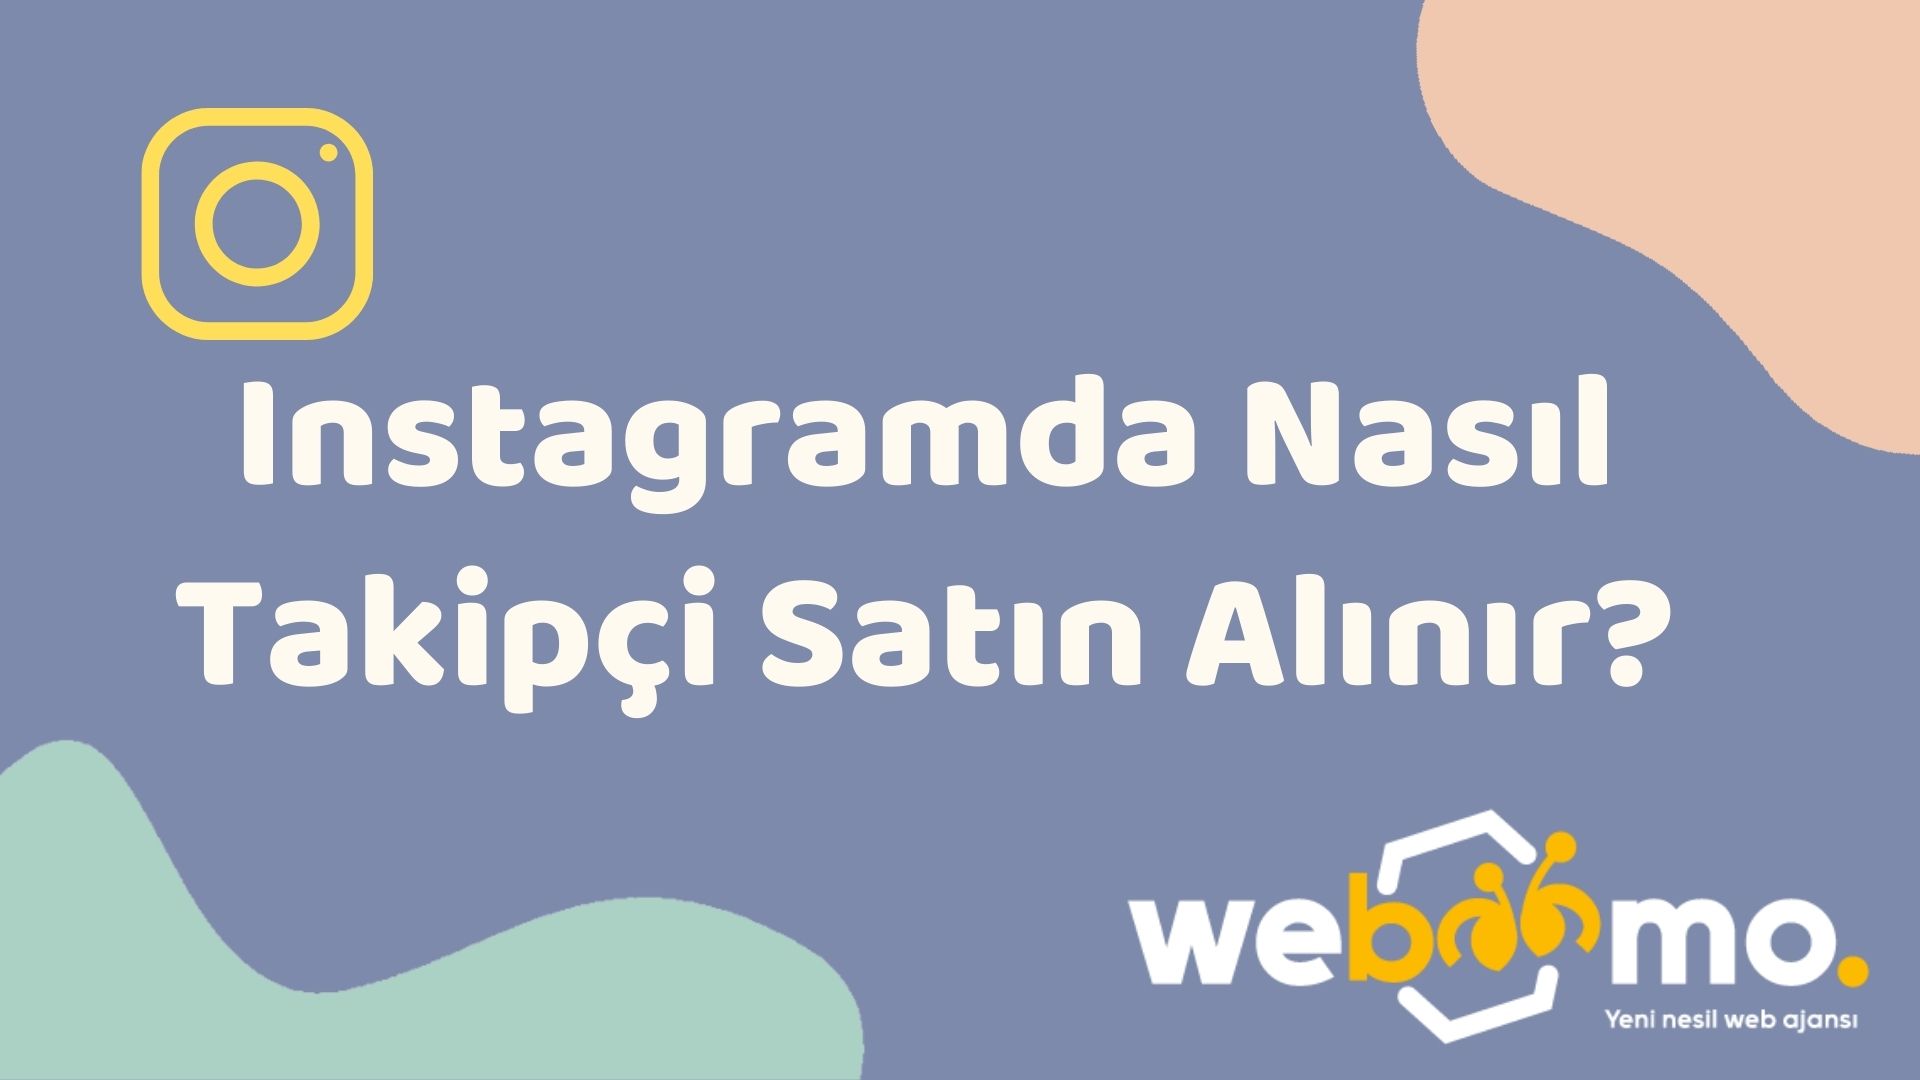 Instagramda Nasil Takipci Satin Alinir